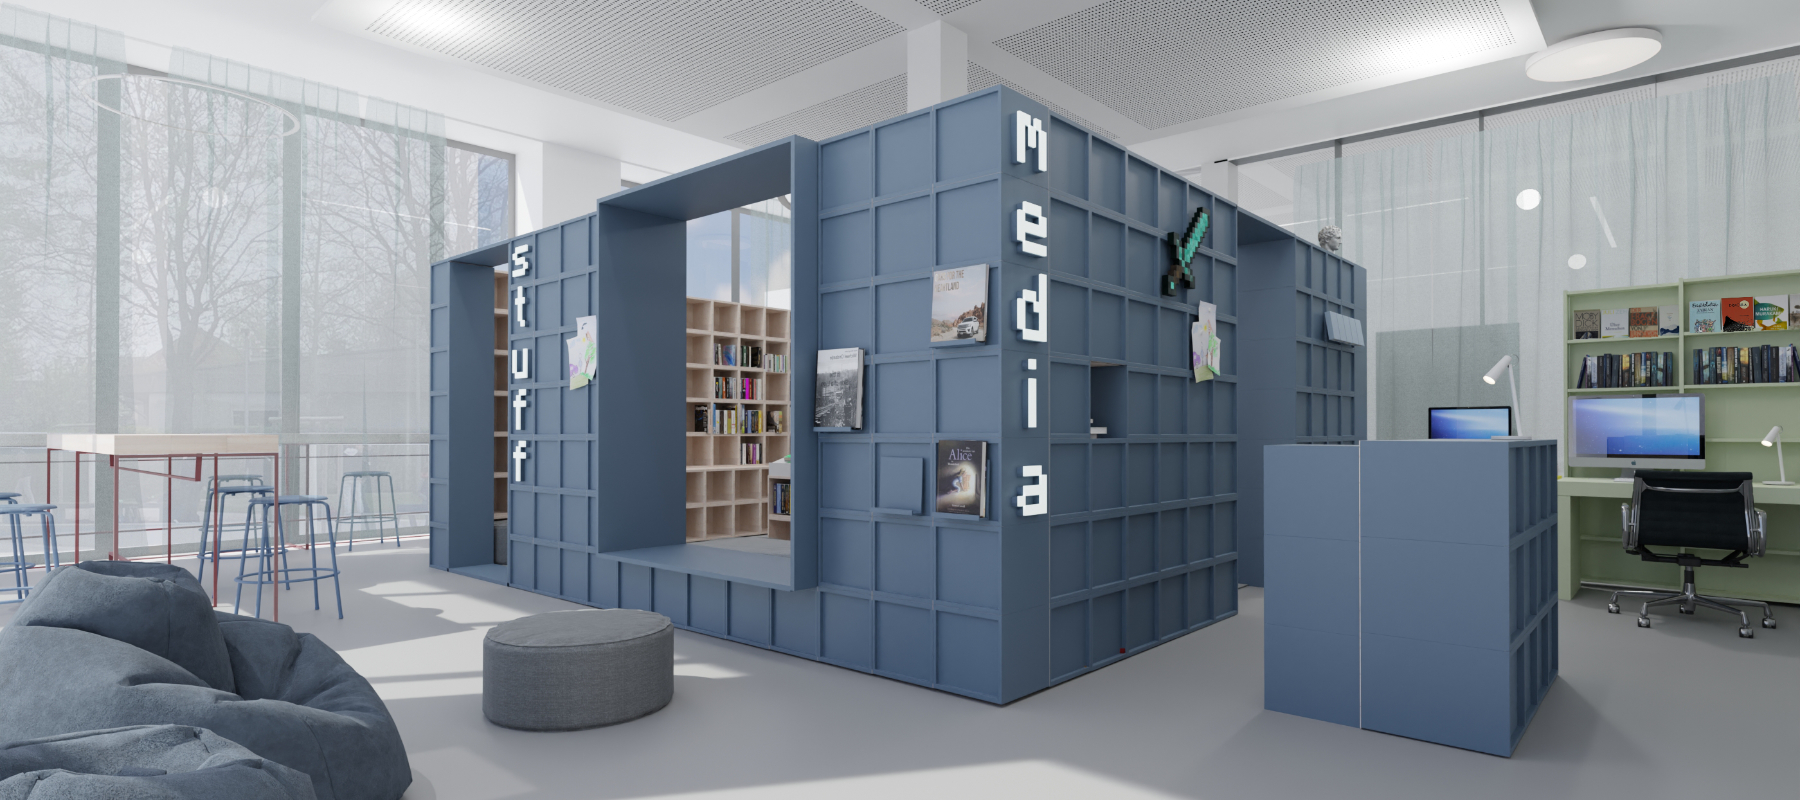 Interiordesign für eine Bücherhalle